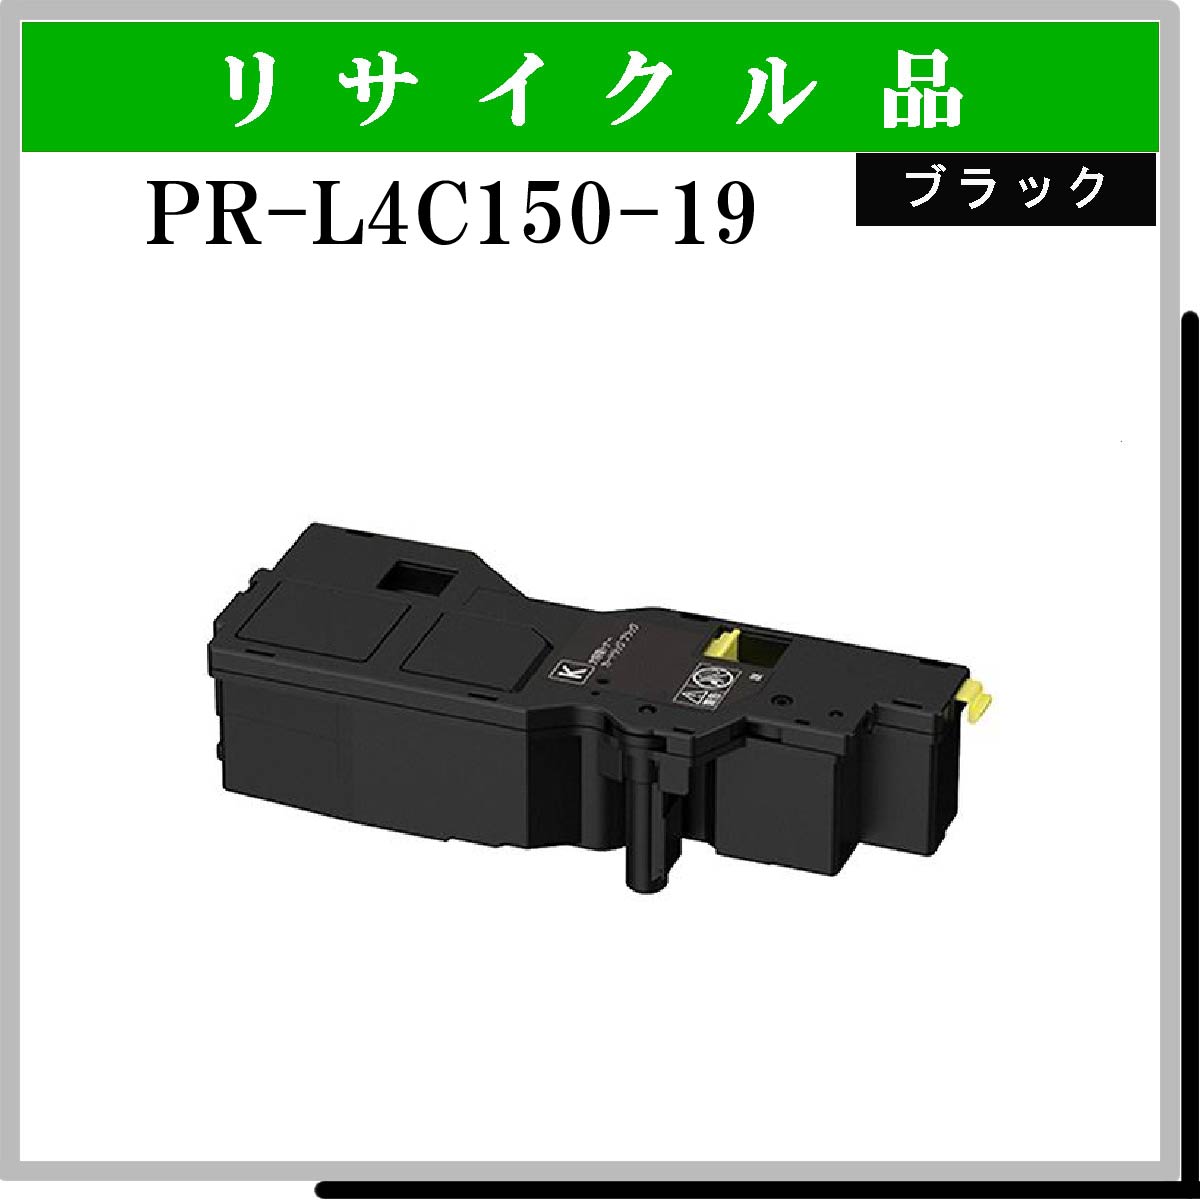 PR-L4C150-19